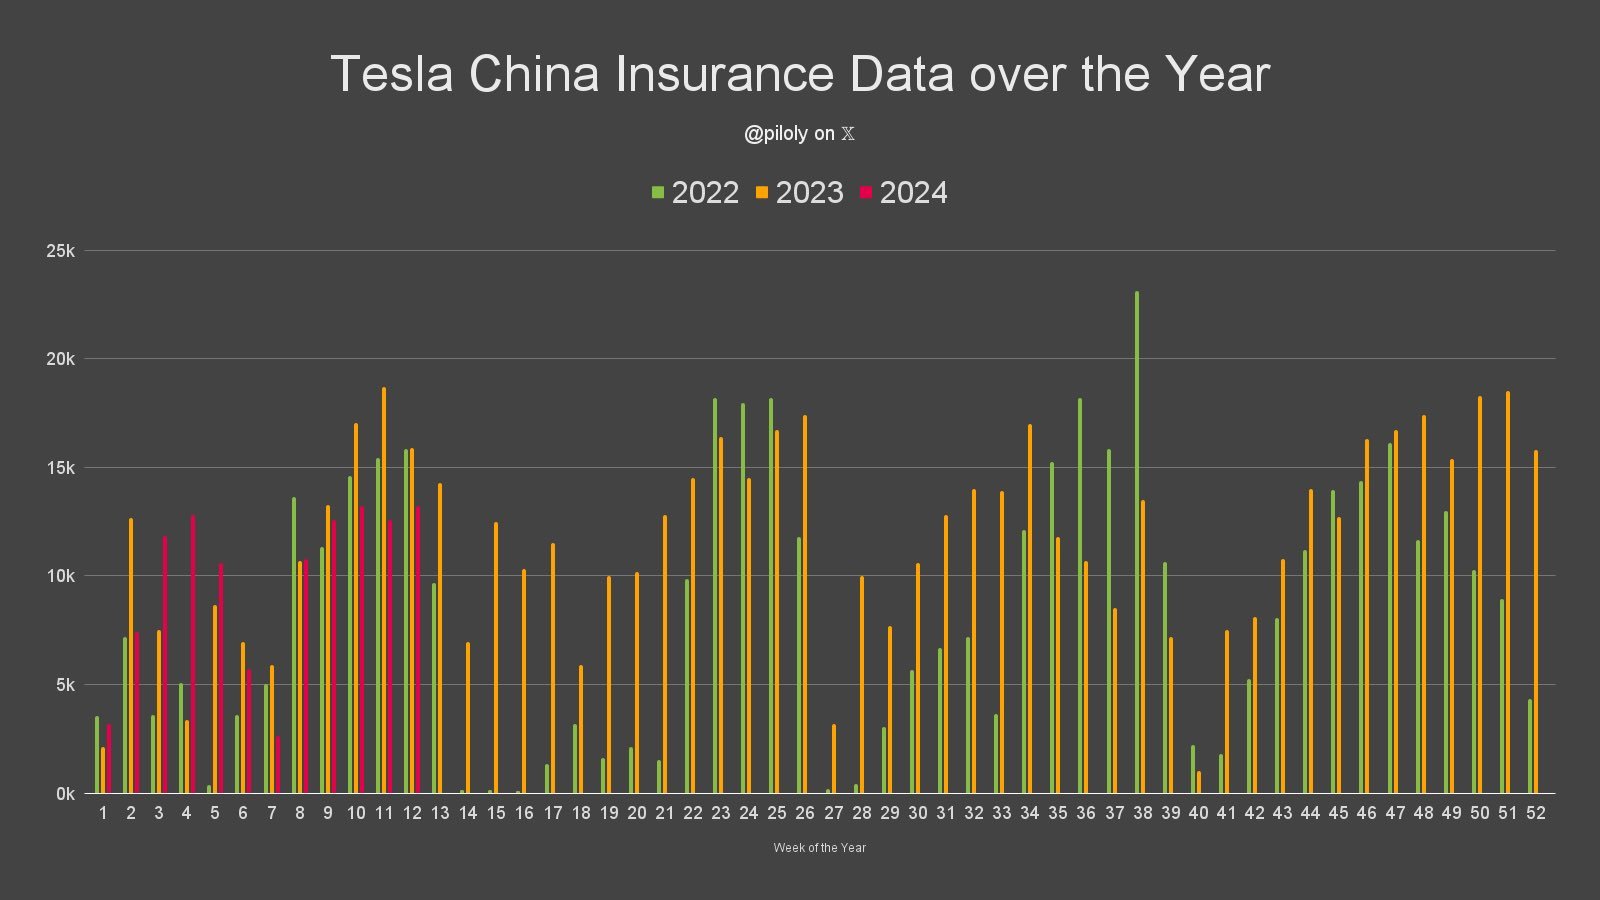 13.2 萬次特斯拉保險註冊  特斯拉似乎正在努力穩定其在中國的銷售趨勢， 同時顯著增加出口  還剩下 1 個星期.. $特斯拉 (TSLA.US)$